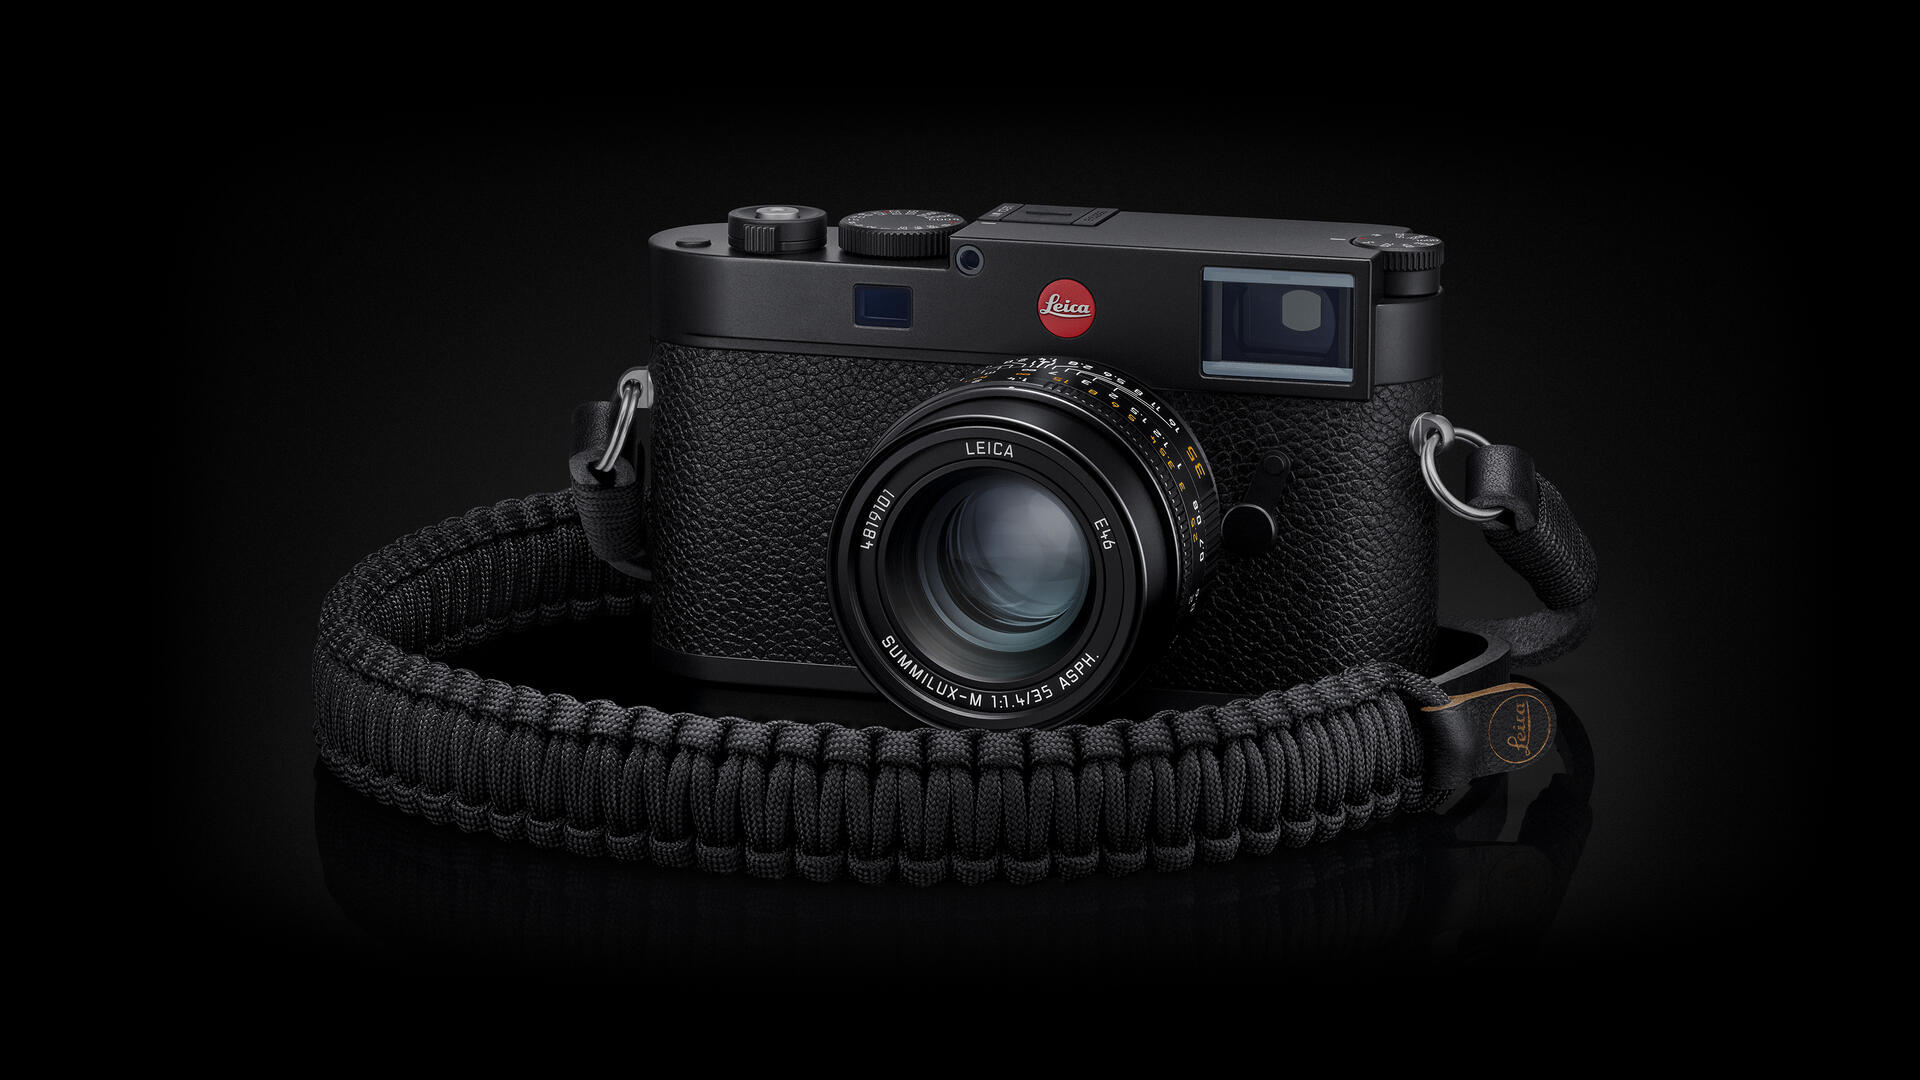 Leica Summilux-M 35/f1.4 11726 ライカズミルックス